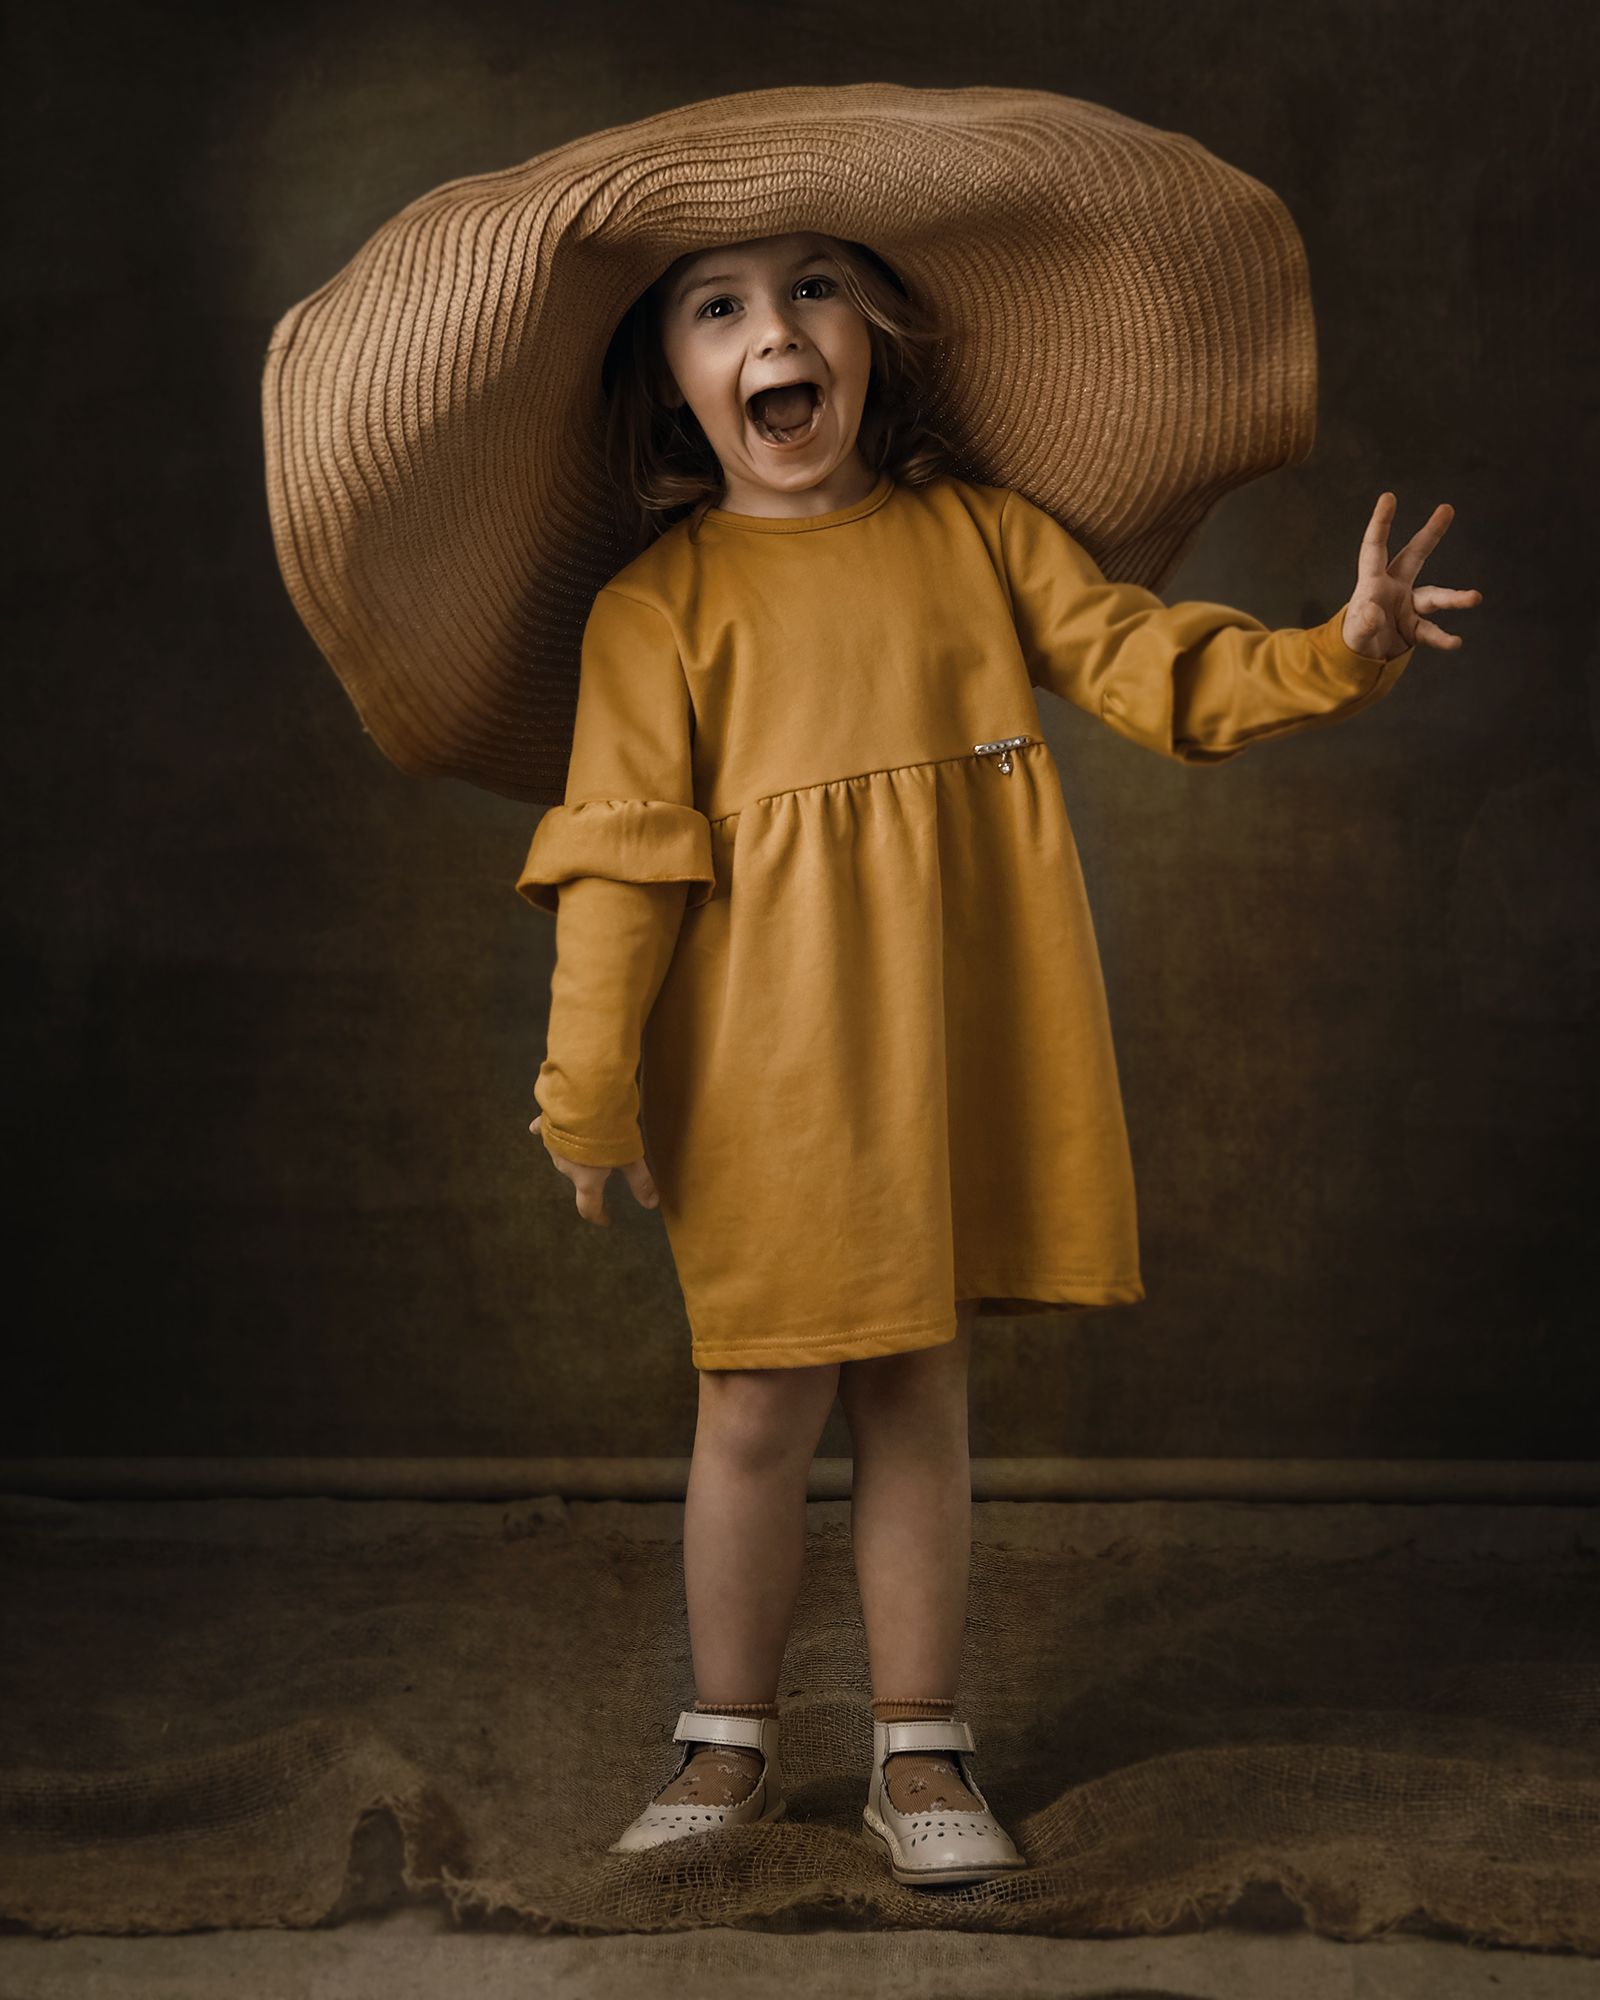 kids, portraits, 2portraits, детский портрет, непосредственность, шляпа, Aleksandr Shvedov